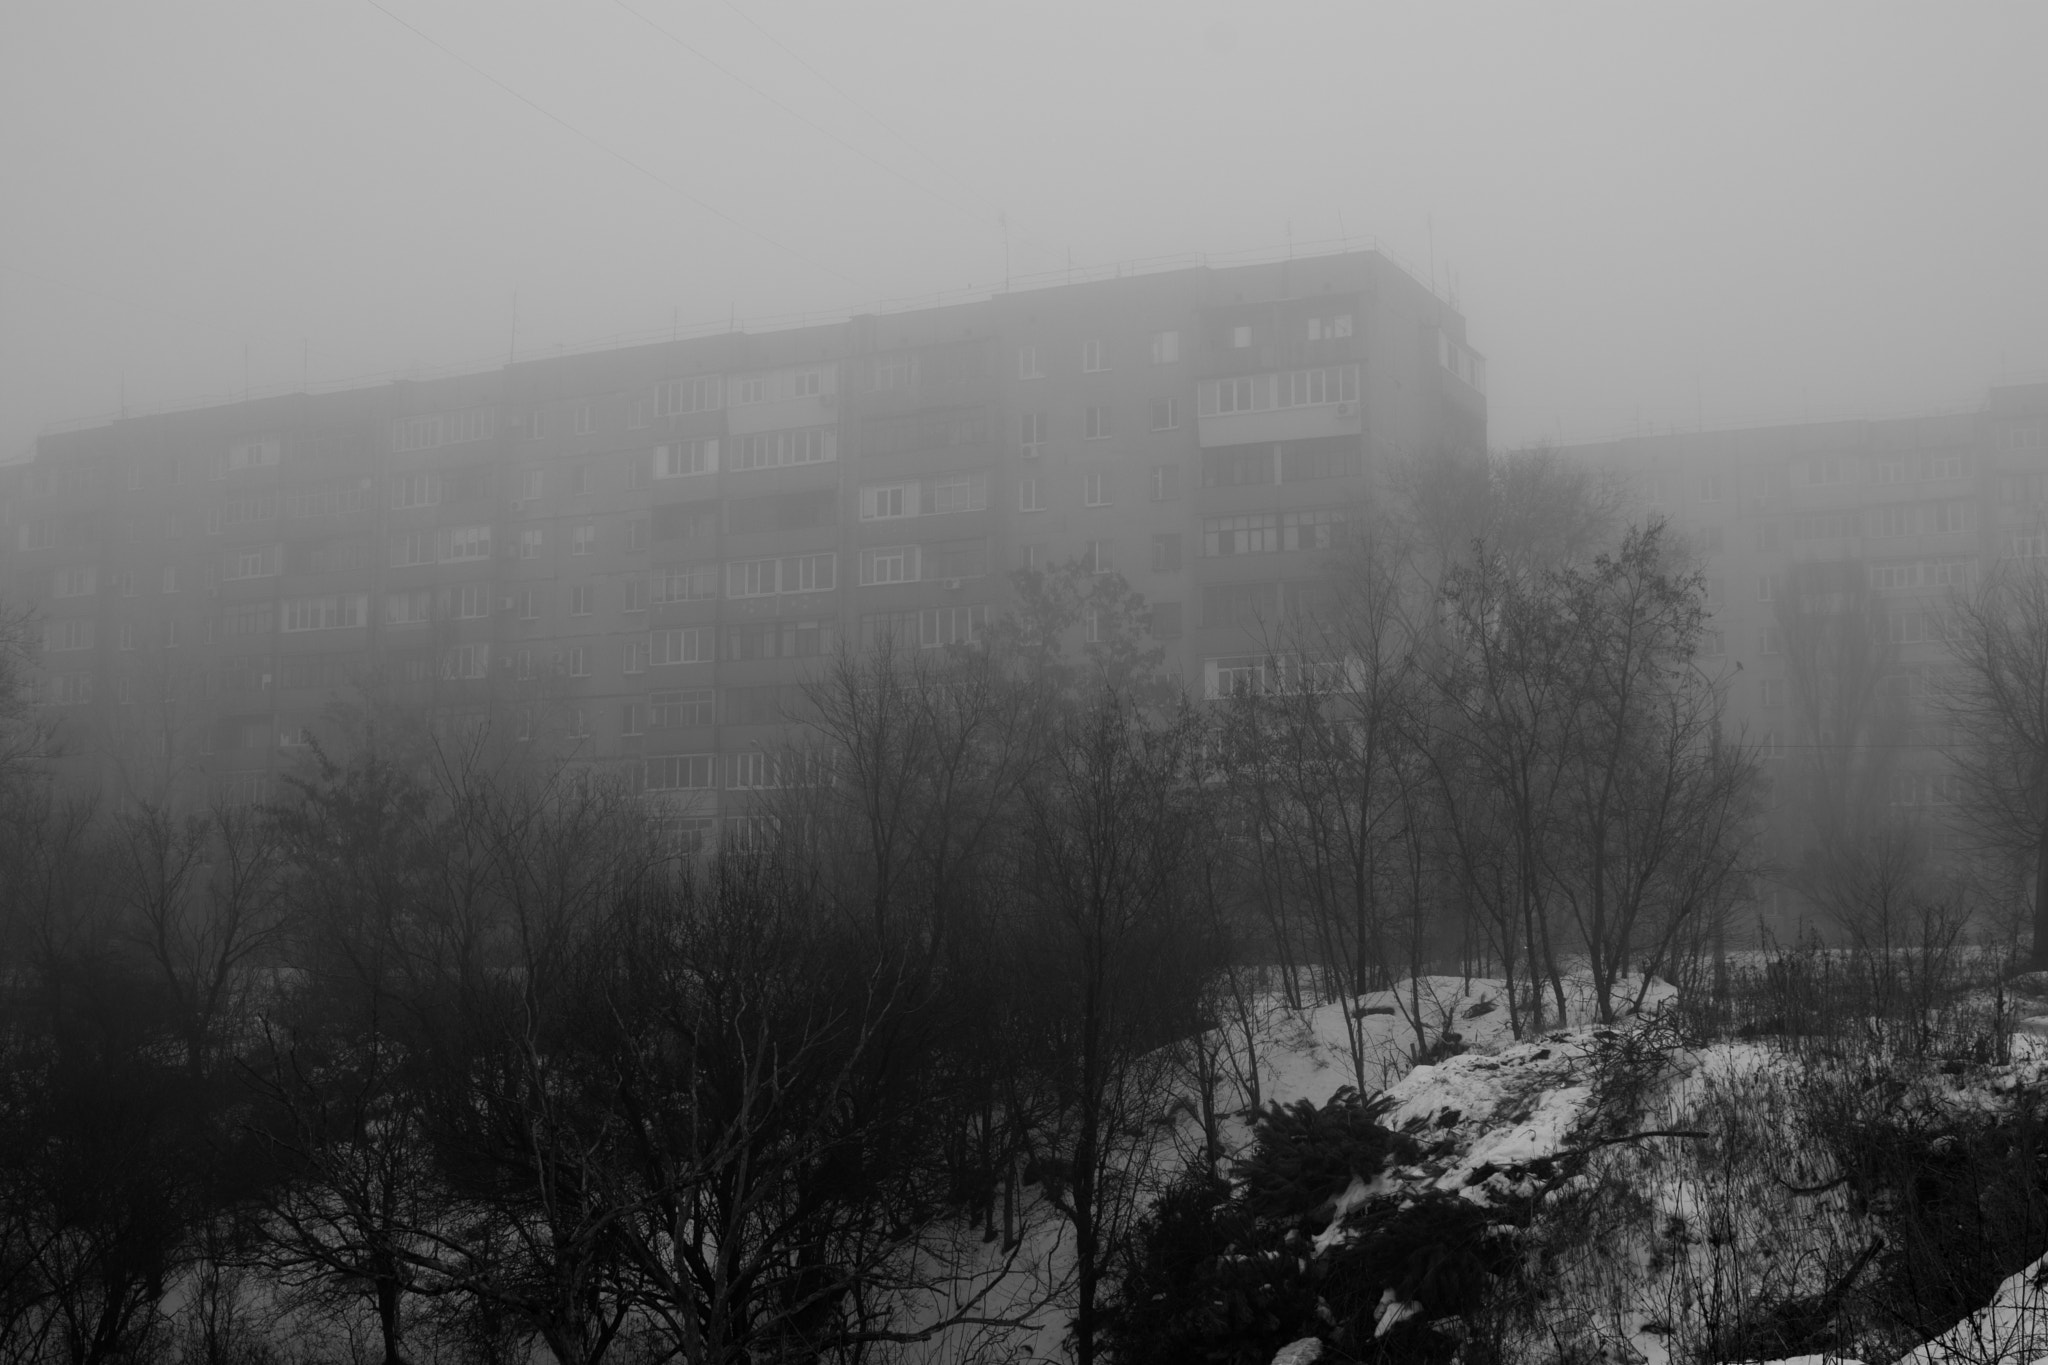 Nikon D7100 + AF Zoom-Nikkor 28-70mm f/3.5-4.5D sample photo. Winter walking: the mist photography